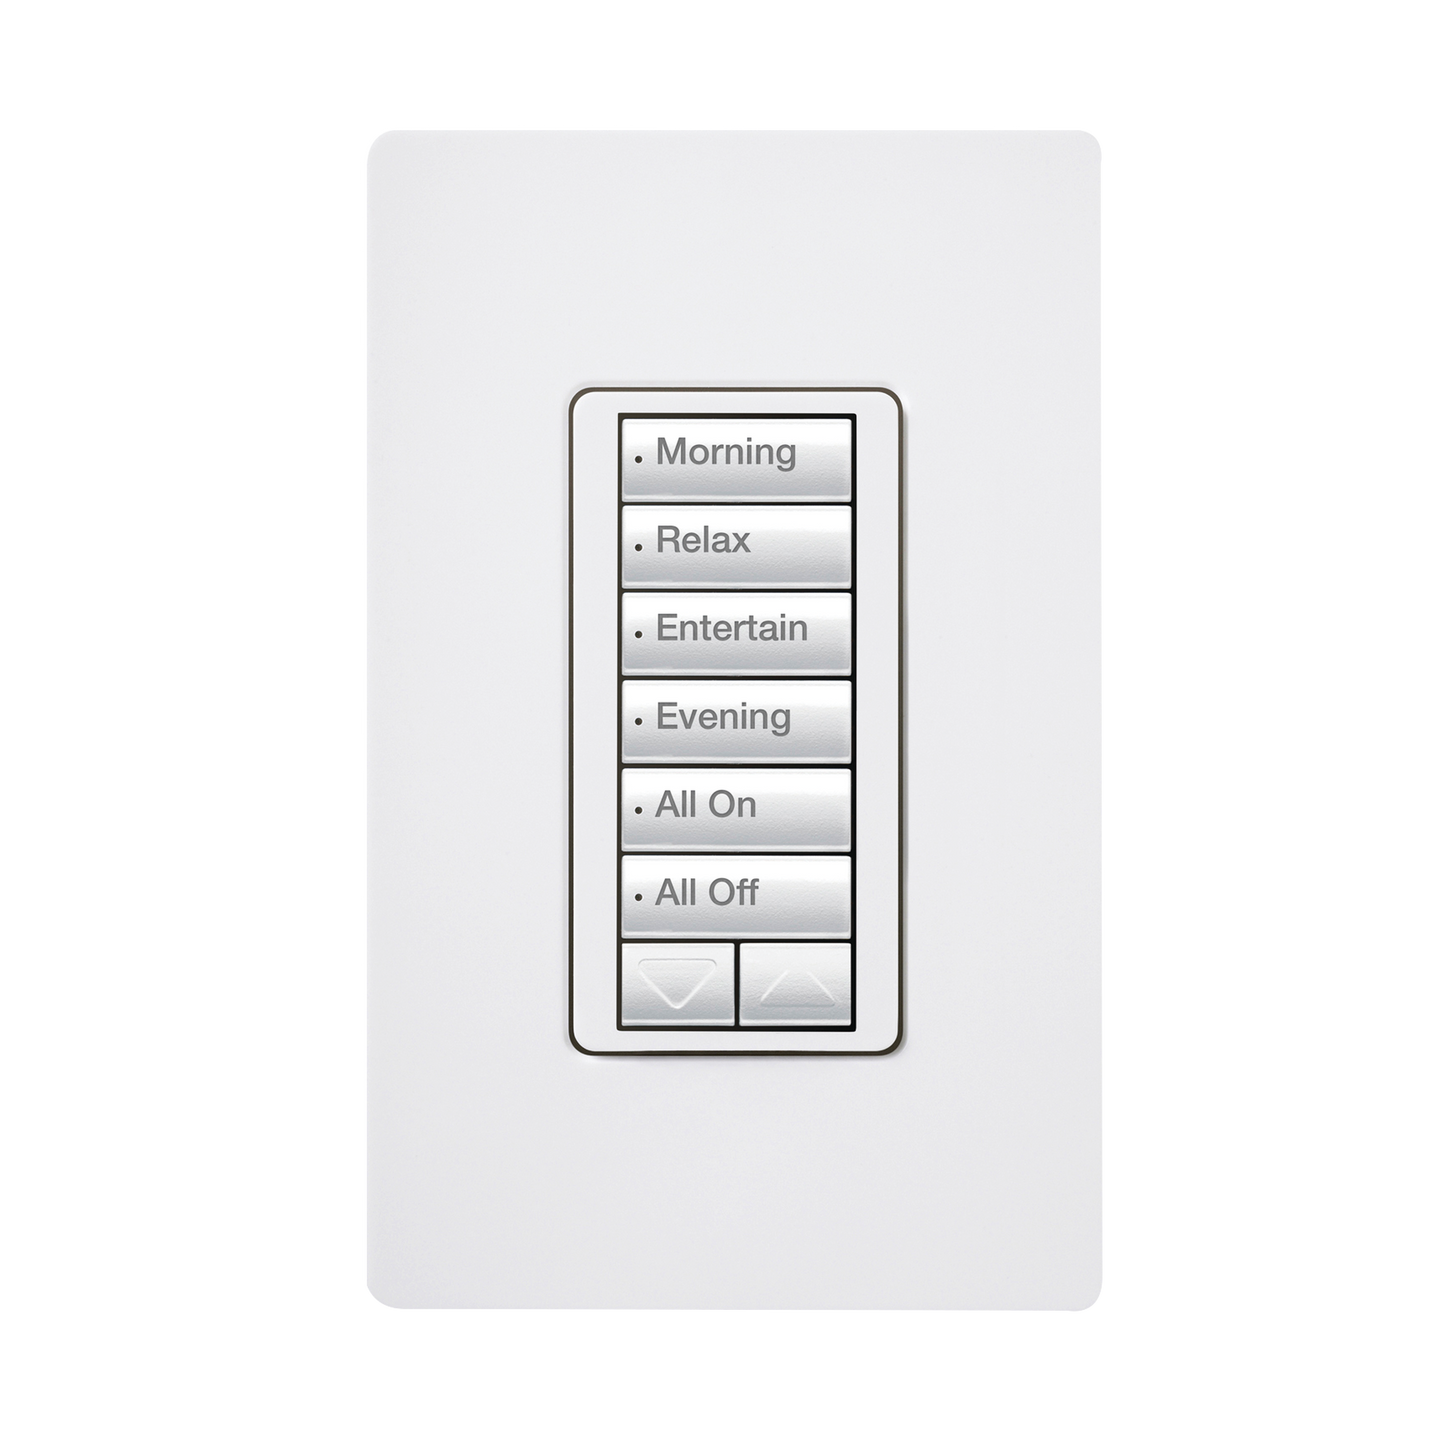 (RadioRA2) Teclado seetouch 6 botones, 2 botones subir/bajar, programe escenas diferentes en cada botón.